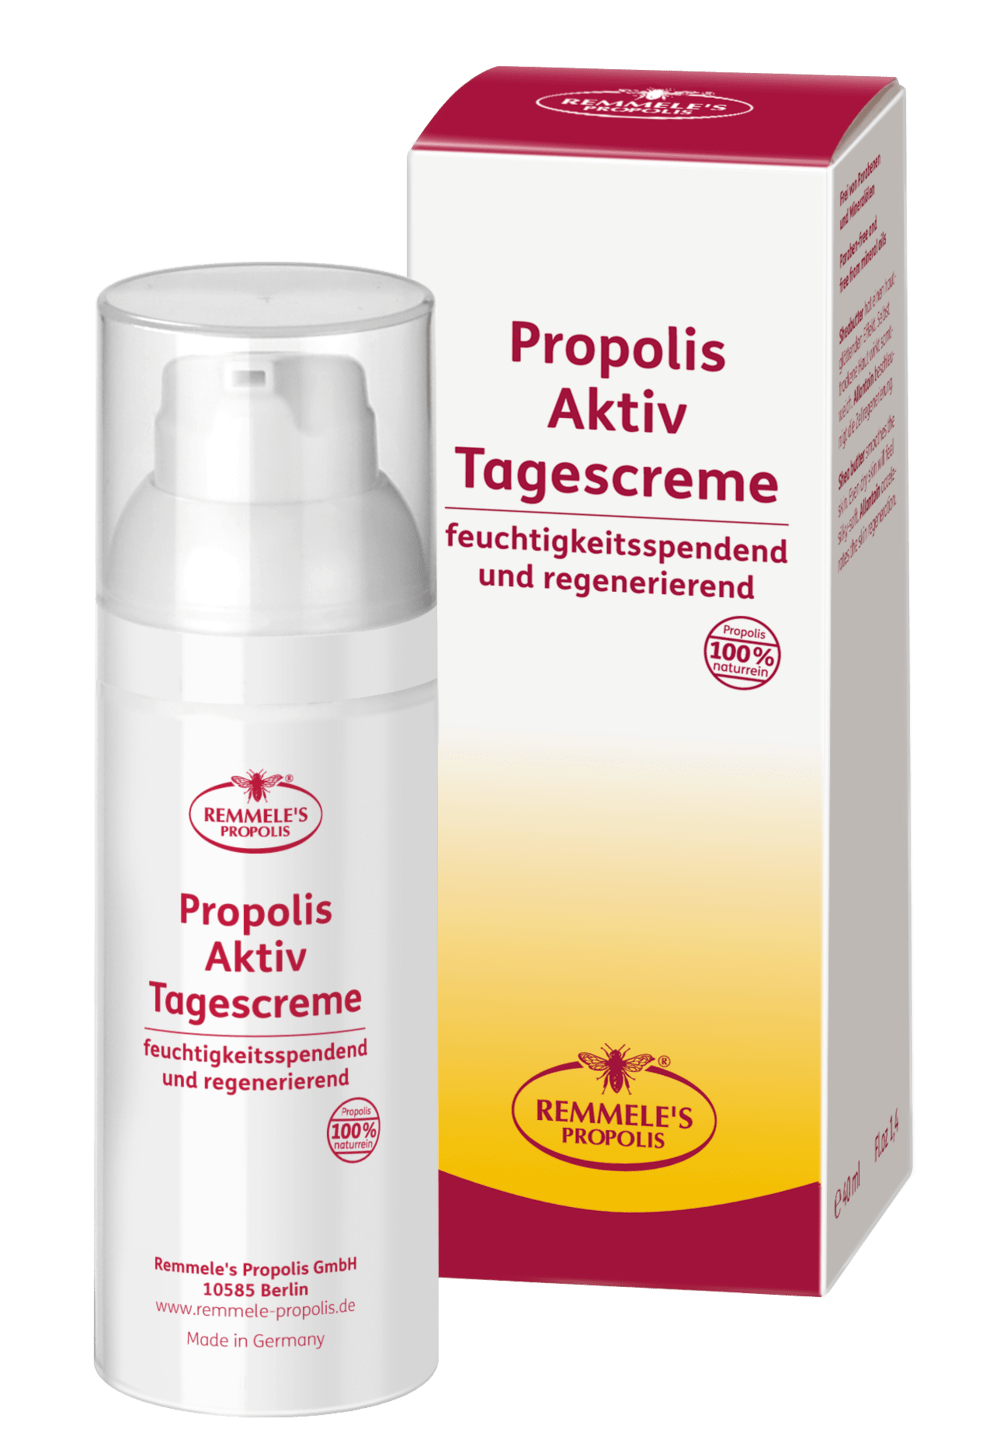 Remmele's Propolis - Propolis Aktiv Tagescreme, 40 ml